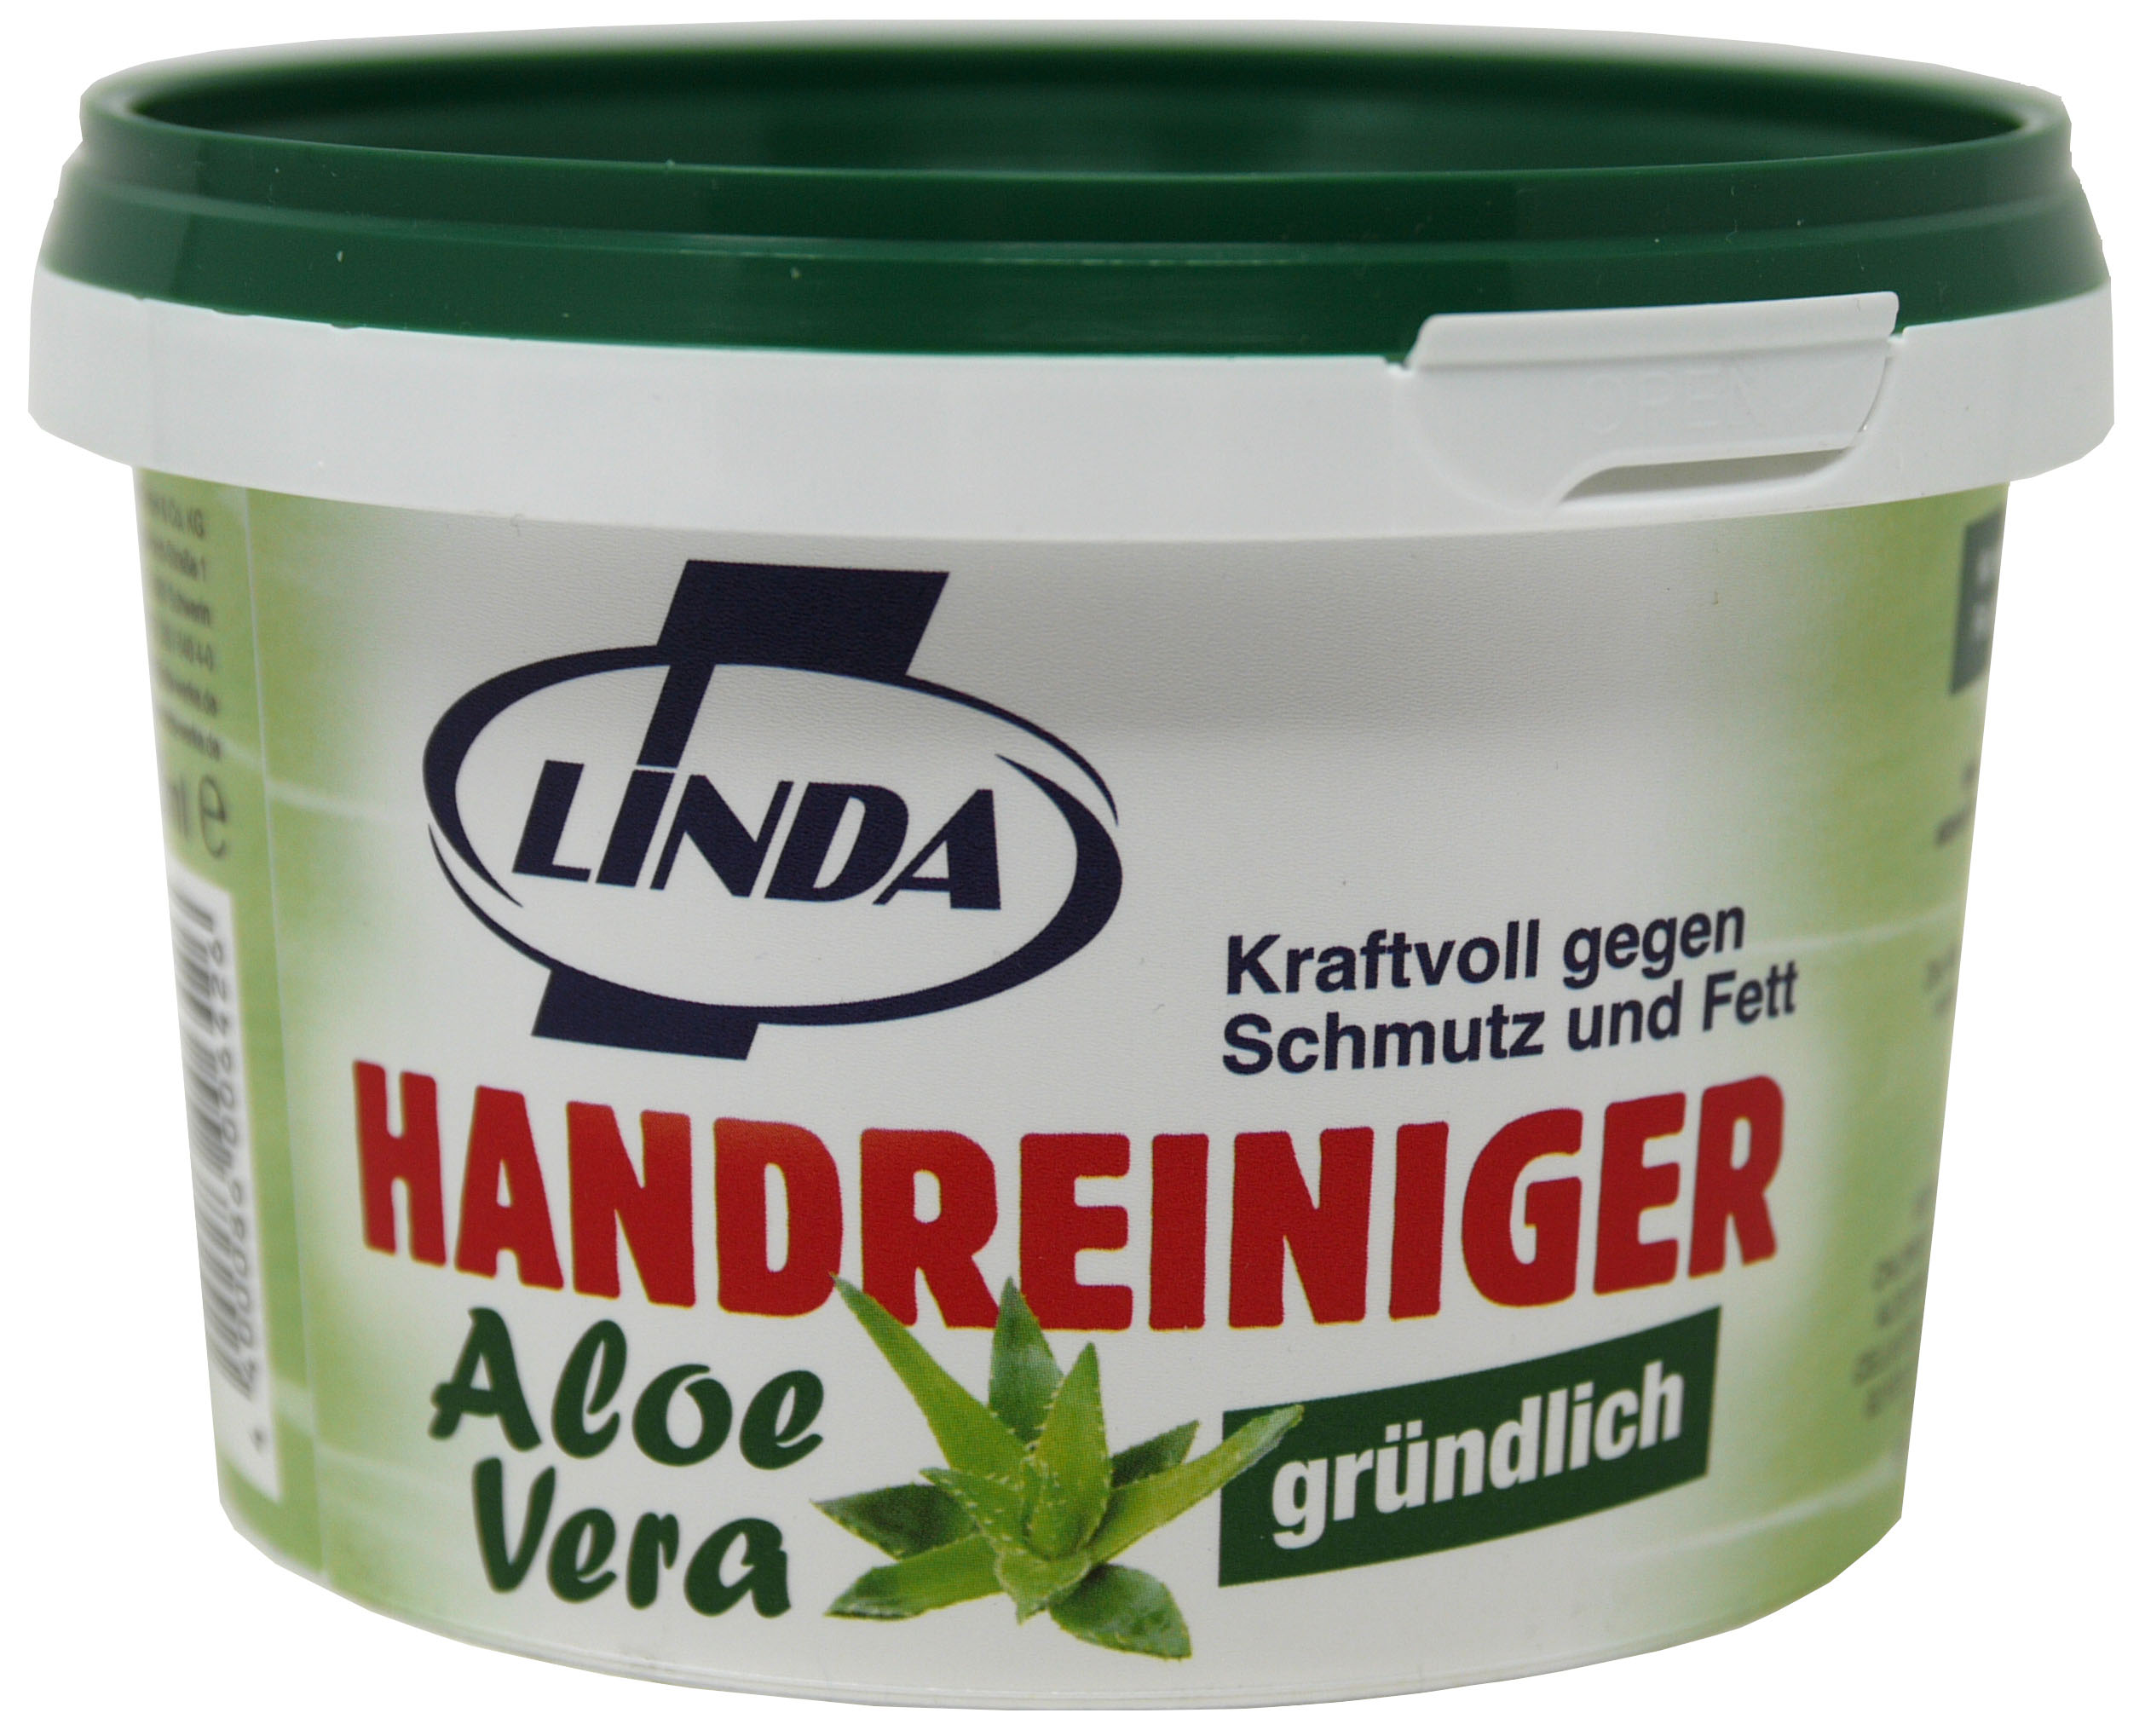 00604 - Handreiniger mit Aloe Vera 500 ml